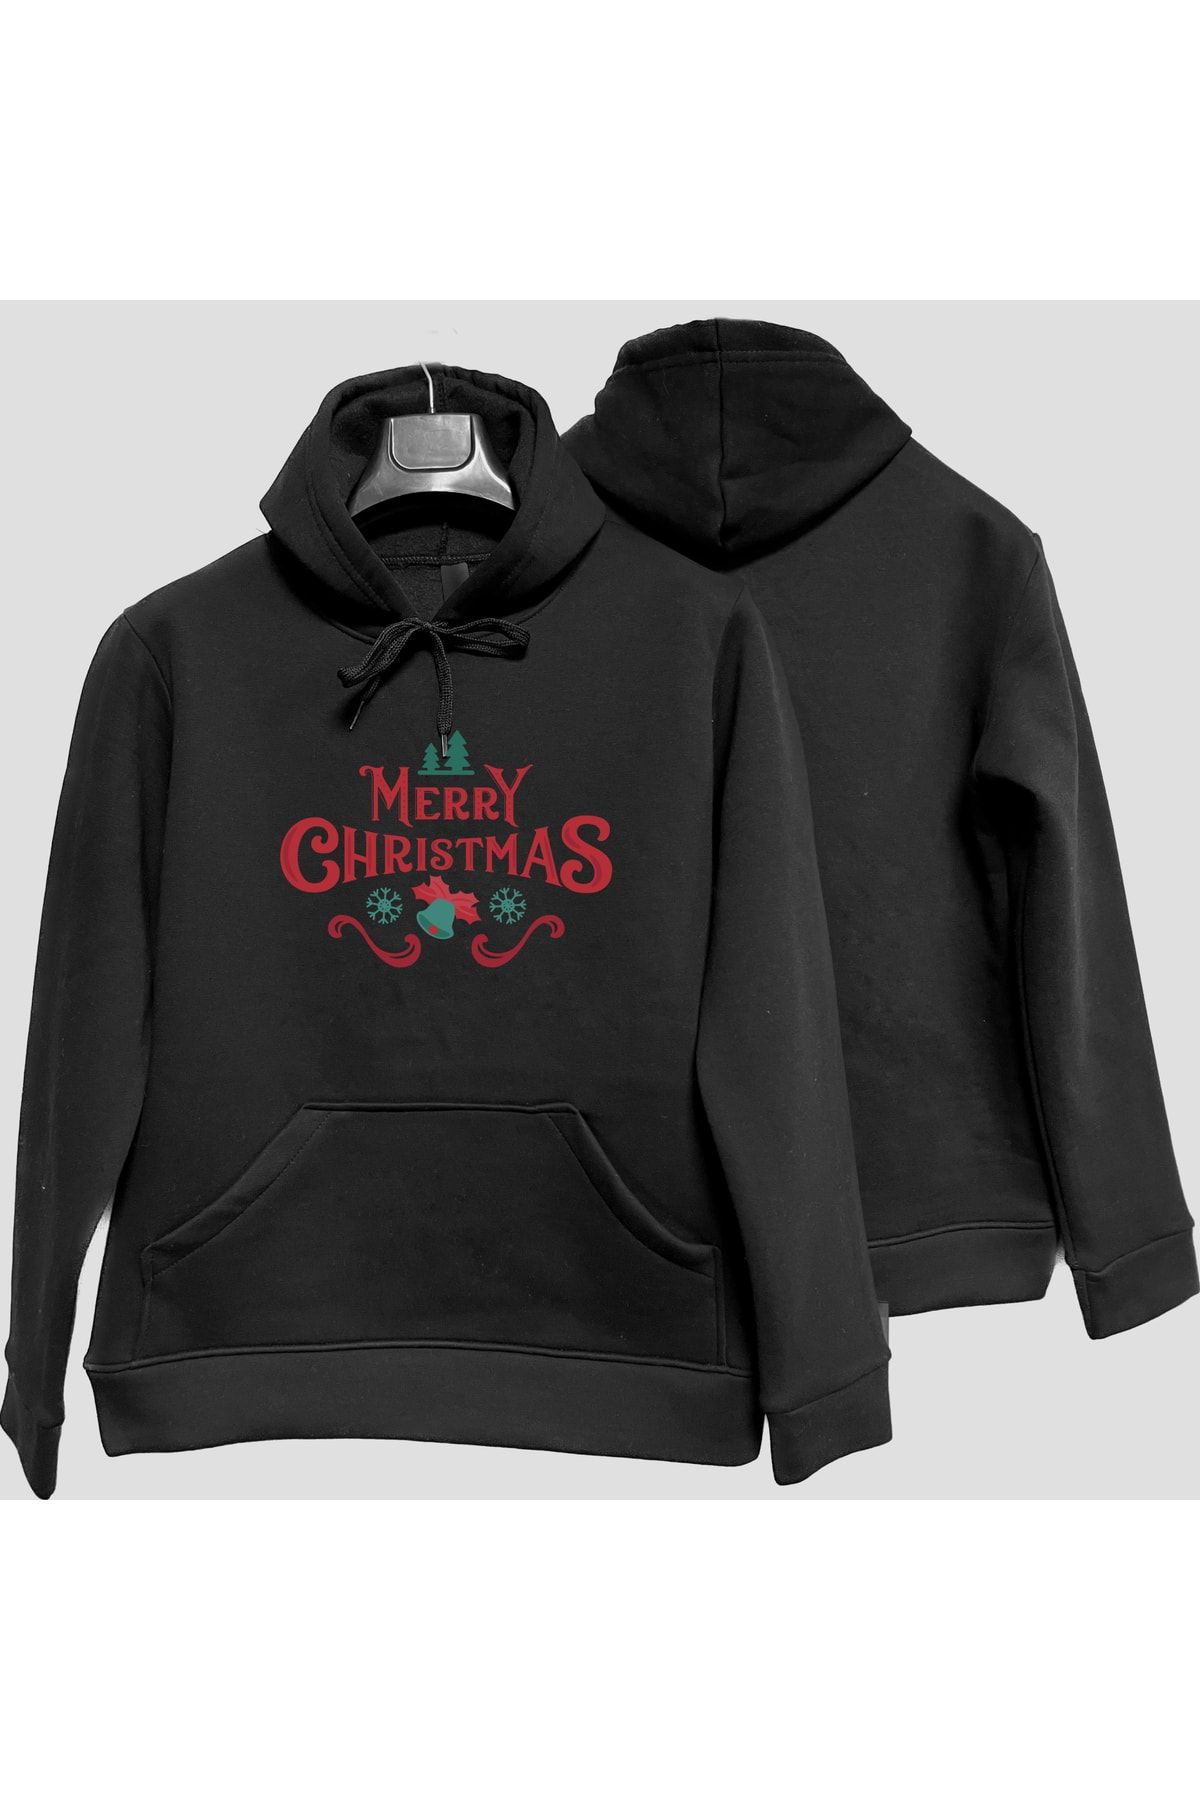 AktifReklam Yılbaşı Merry Christmas Baskılı Unisex Kapüşonlu Sweatshirt